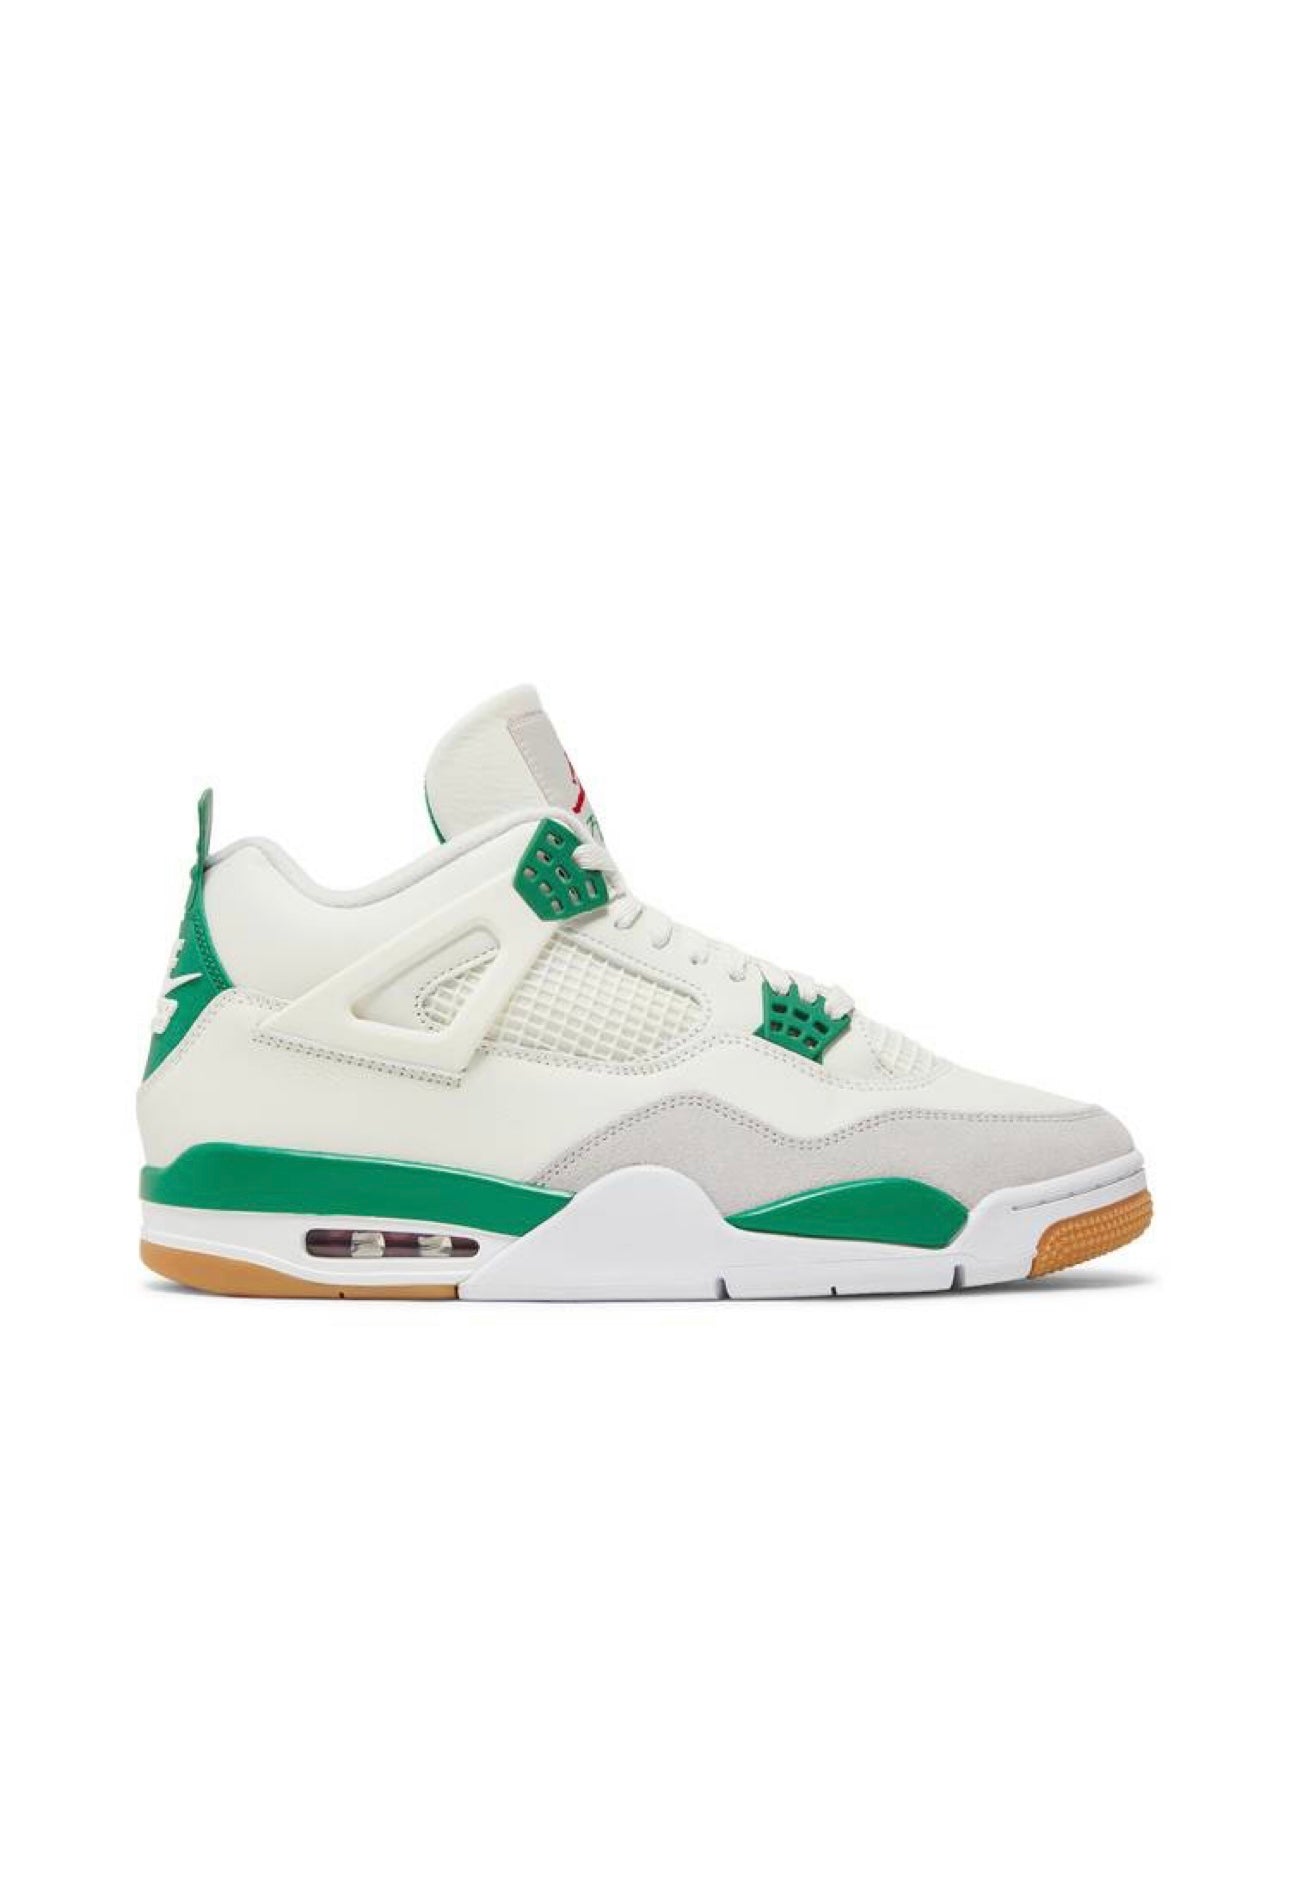 Jordan 4 x Nike SB ‘ Pine Green’